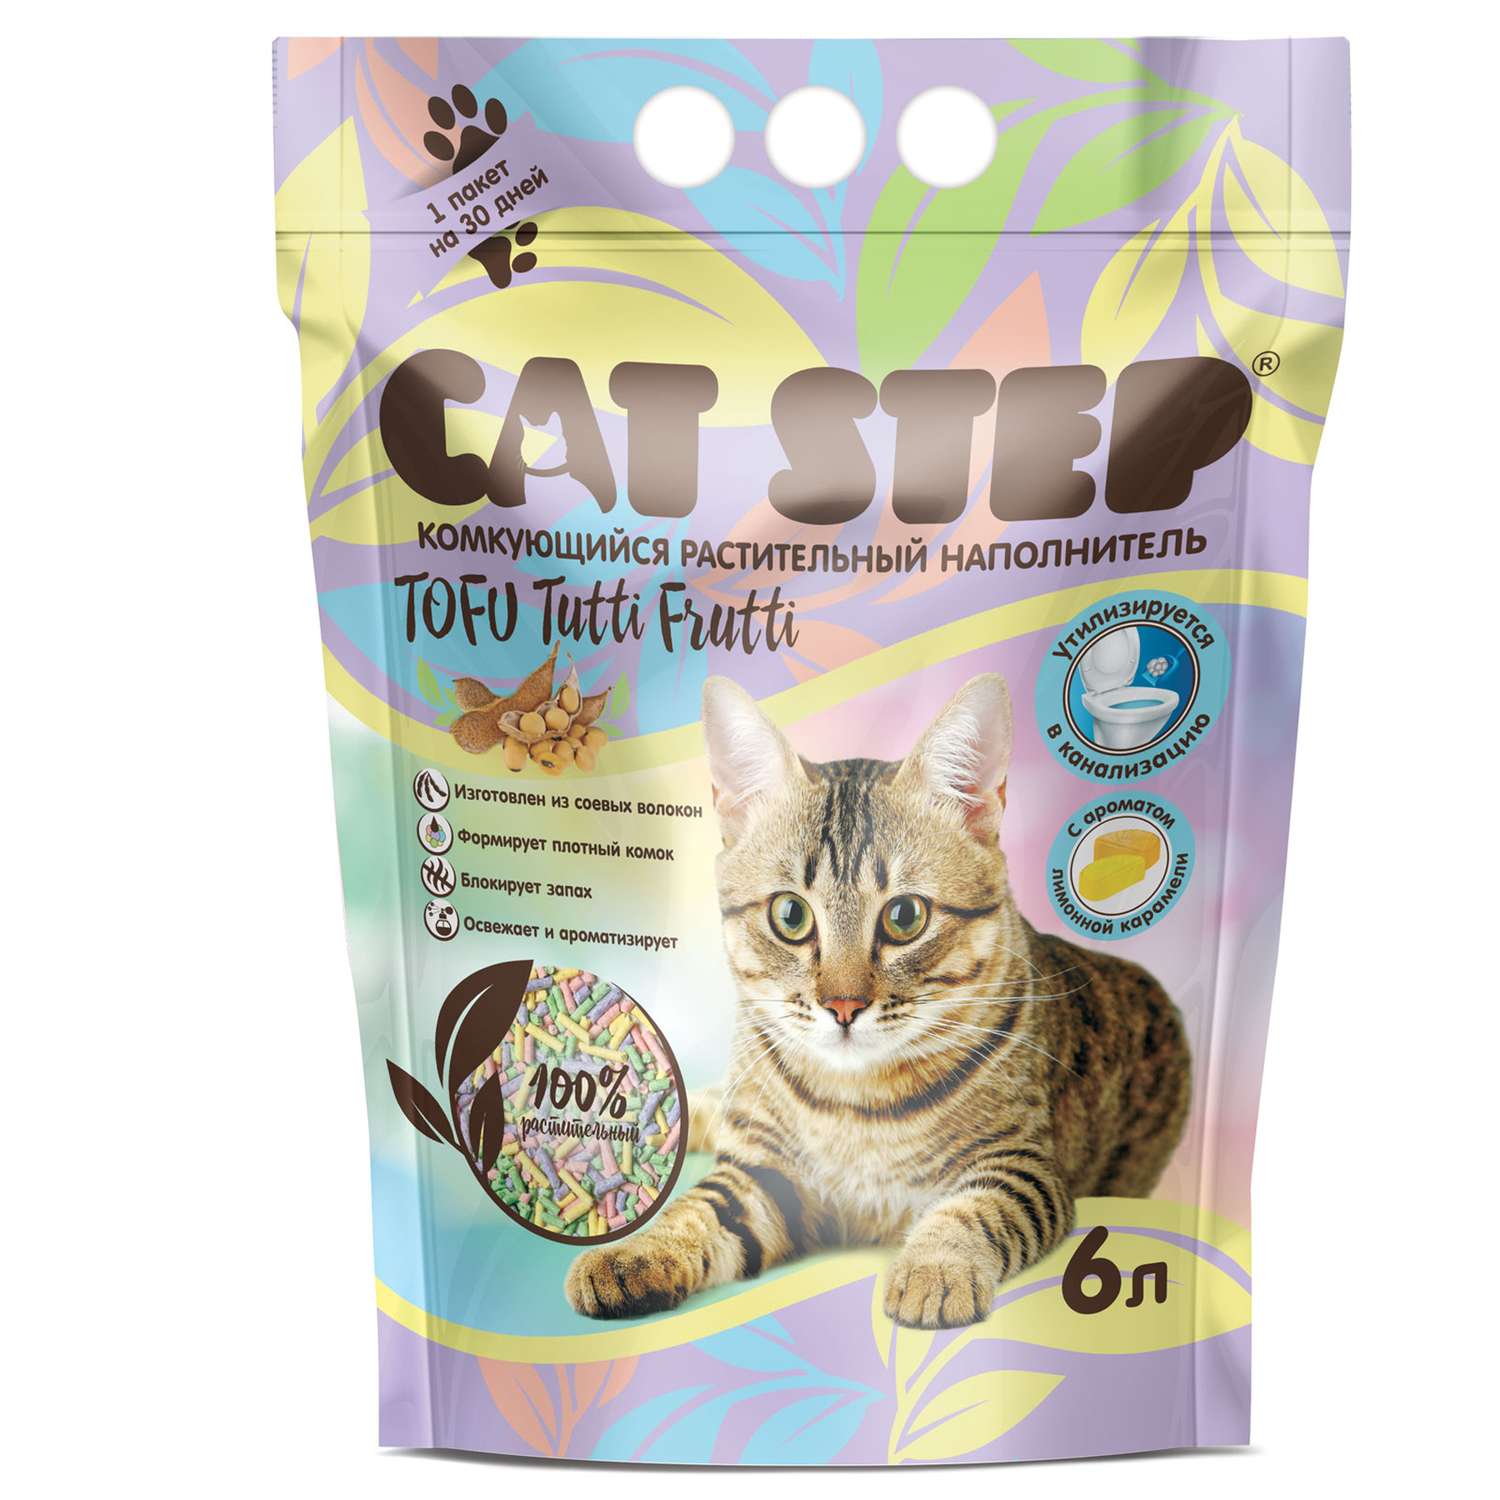 Наполнитель для кошек Cat Step Tofu Tutti Frutti комкующийся растительный 6л - фото 1